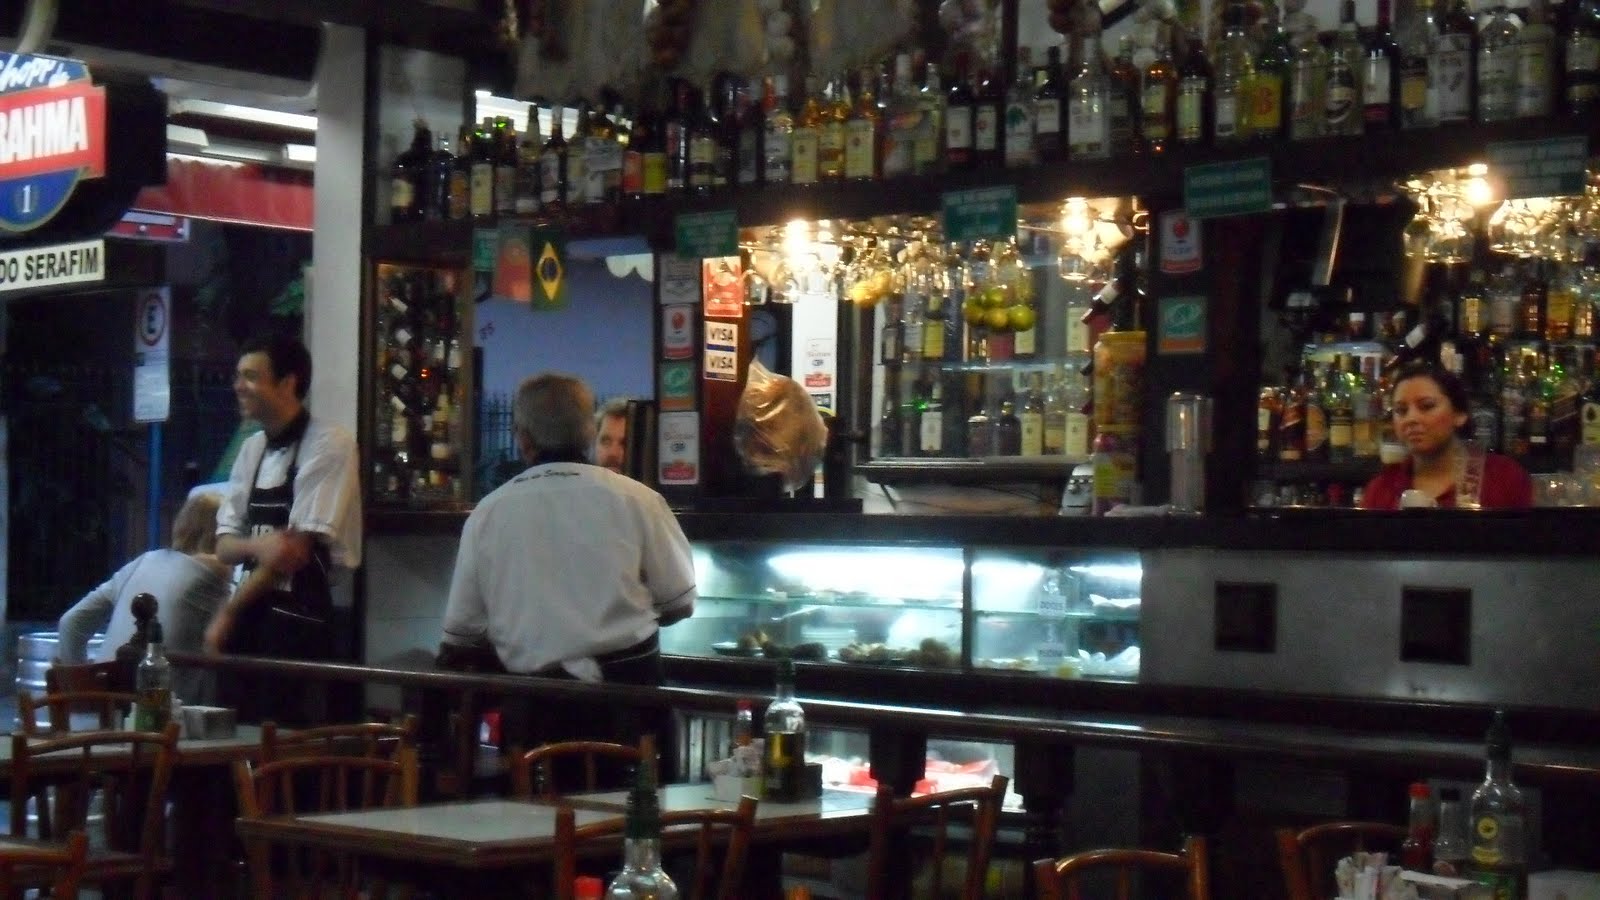 Bares (antigo): Bar do Serafim